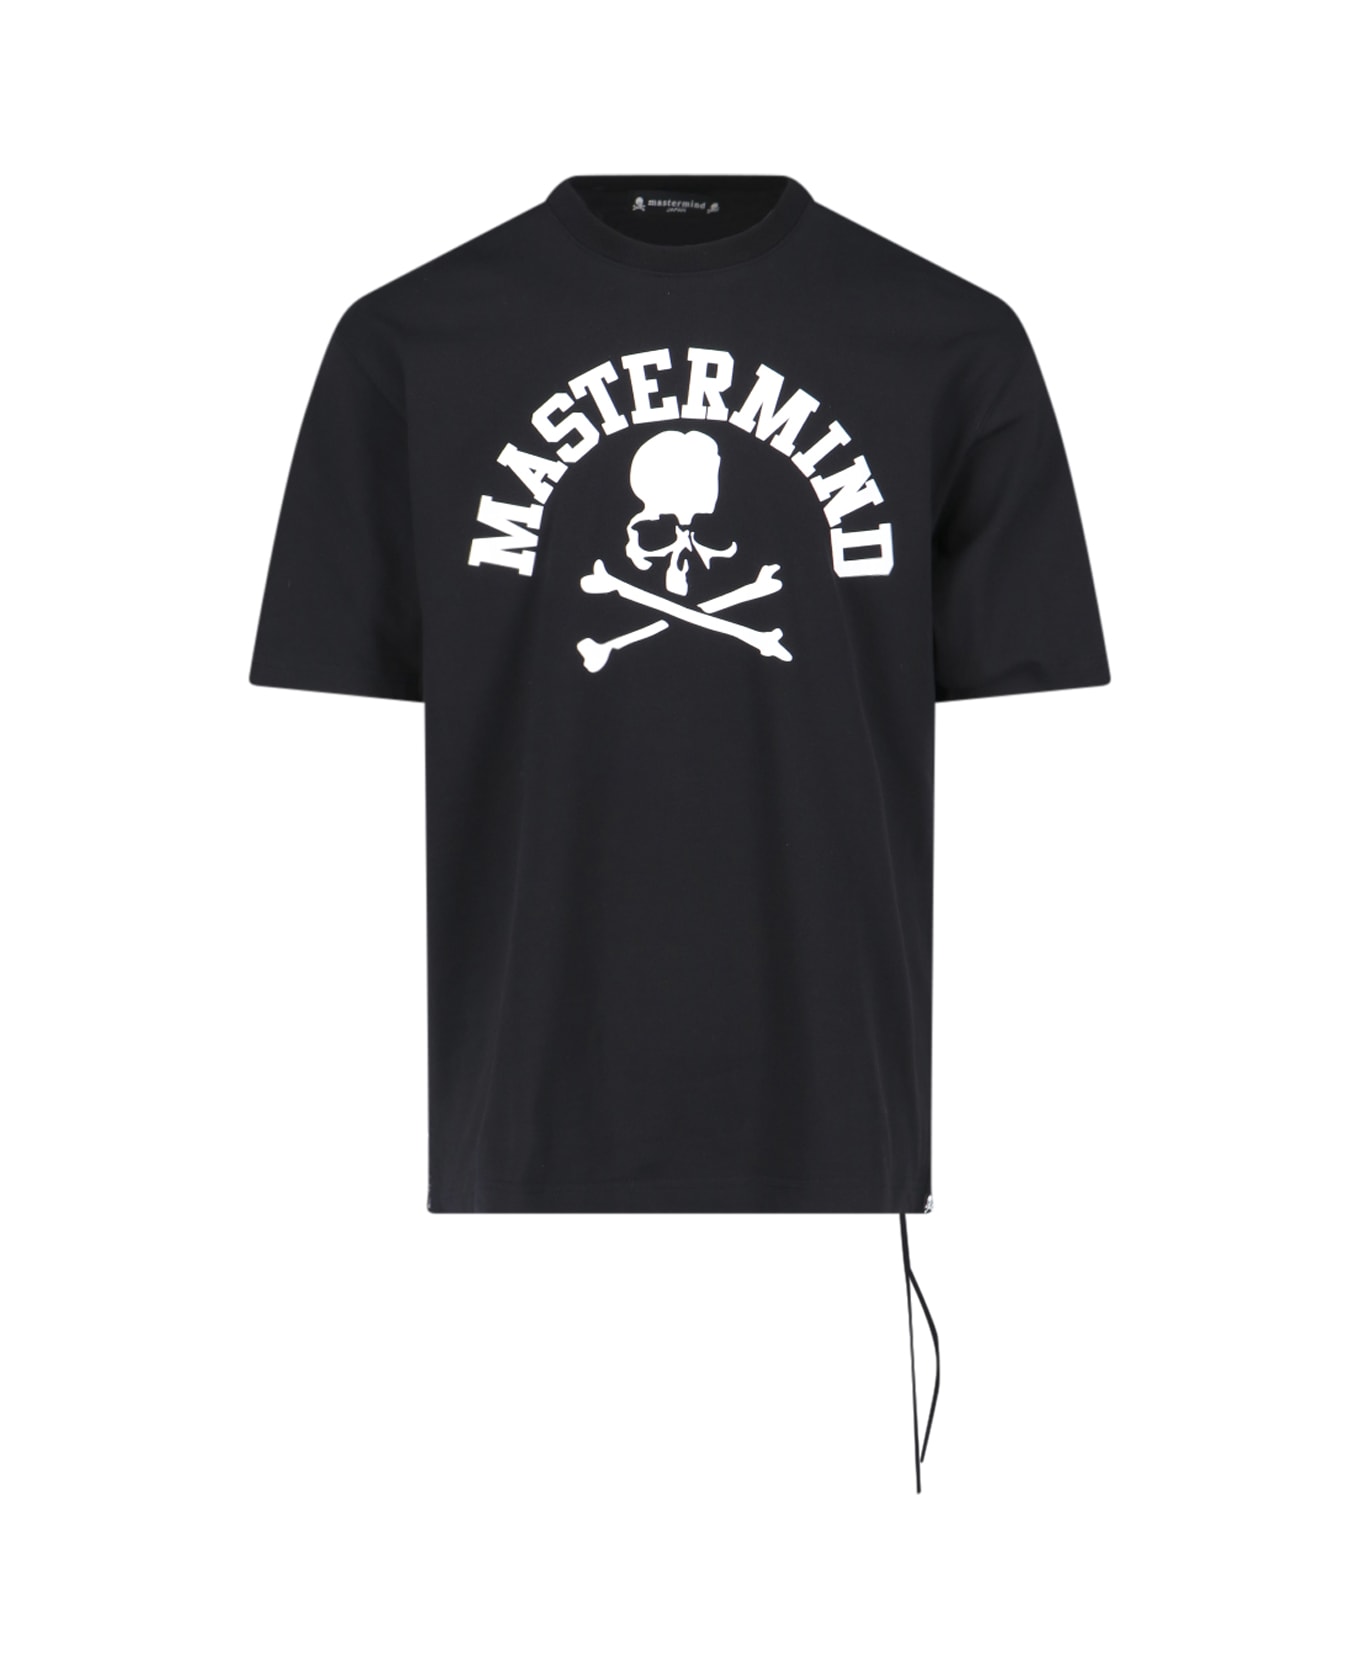 Mastermind Japan Logo T-shirt - Black  